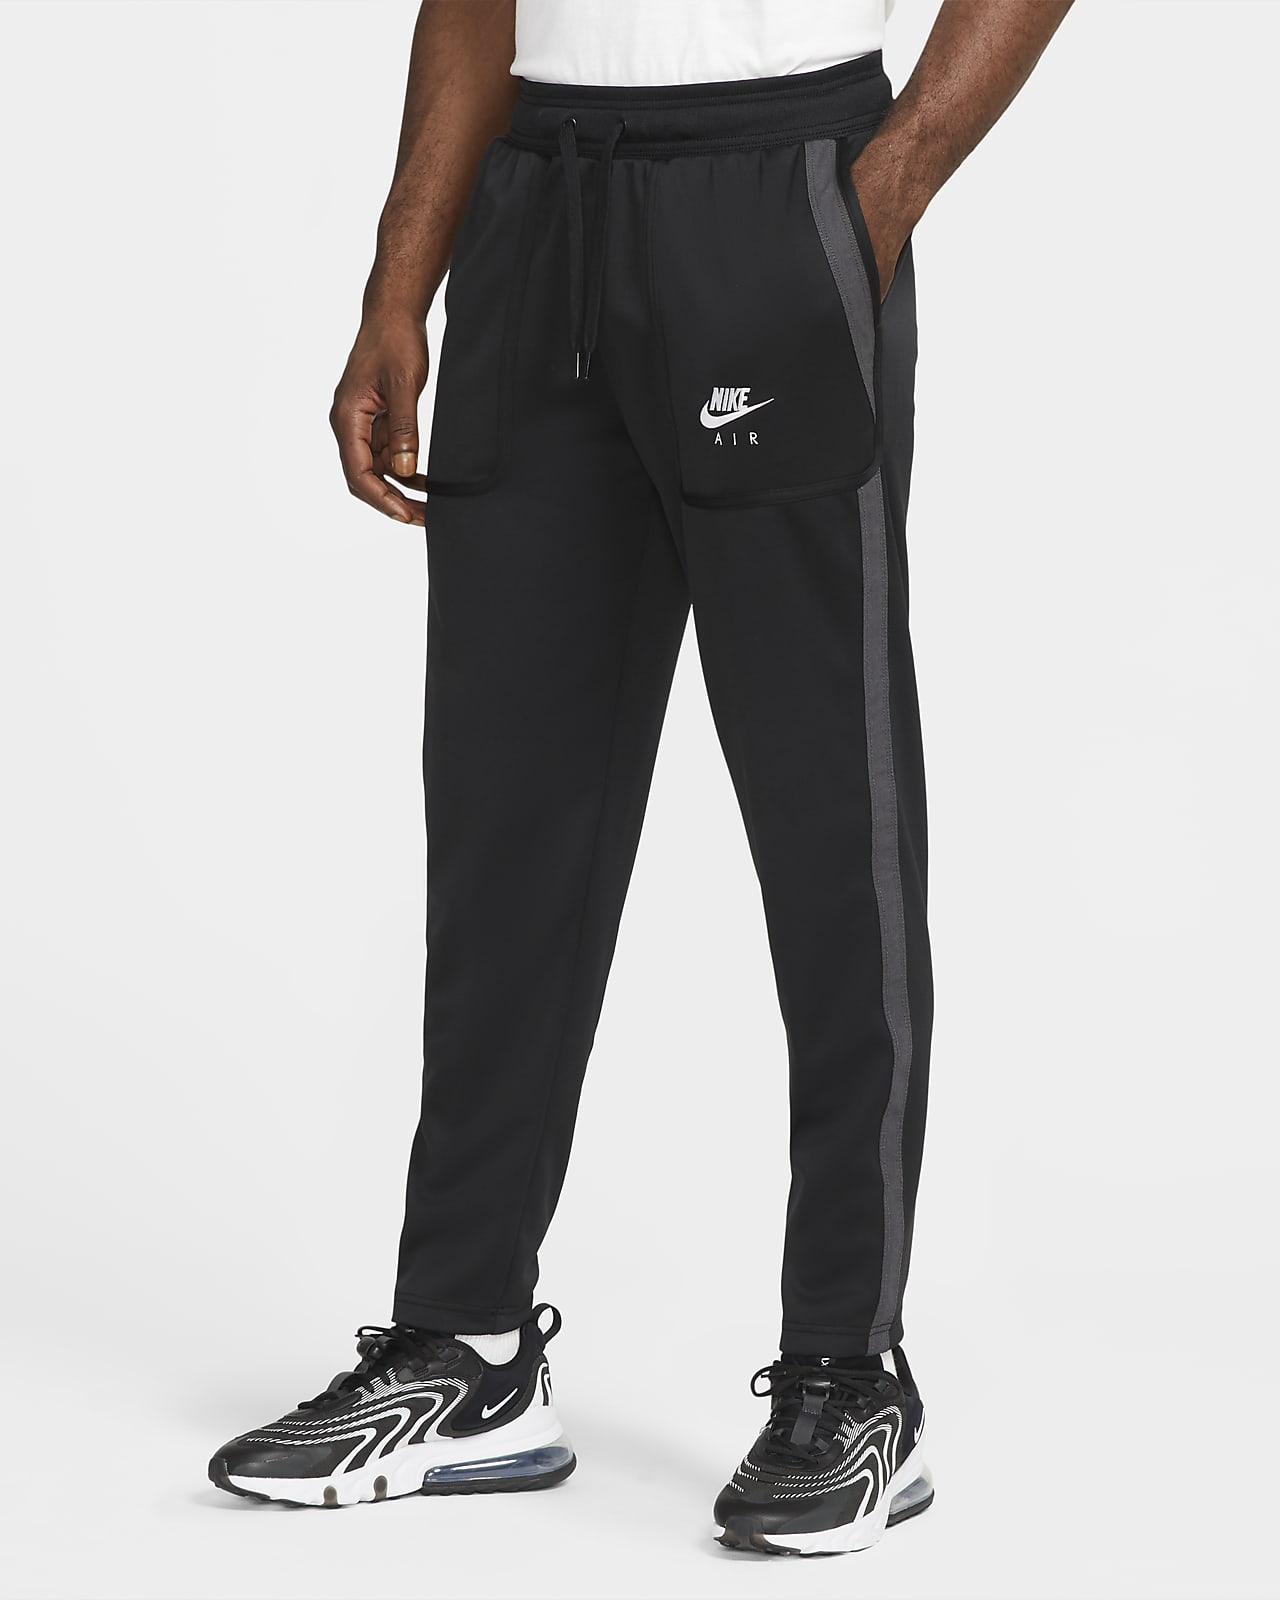 Nike Air Men's Trousers. Nike LU